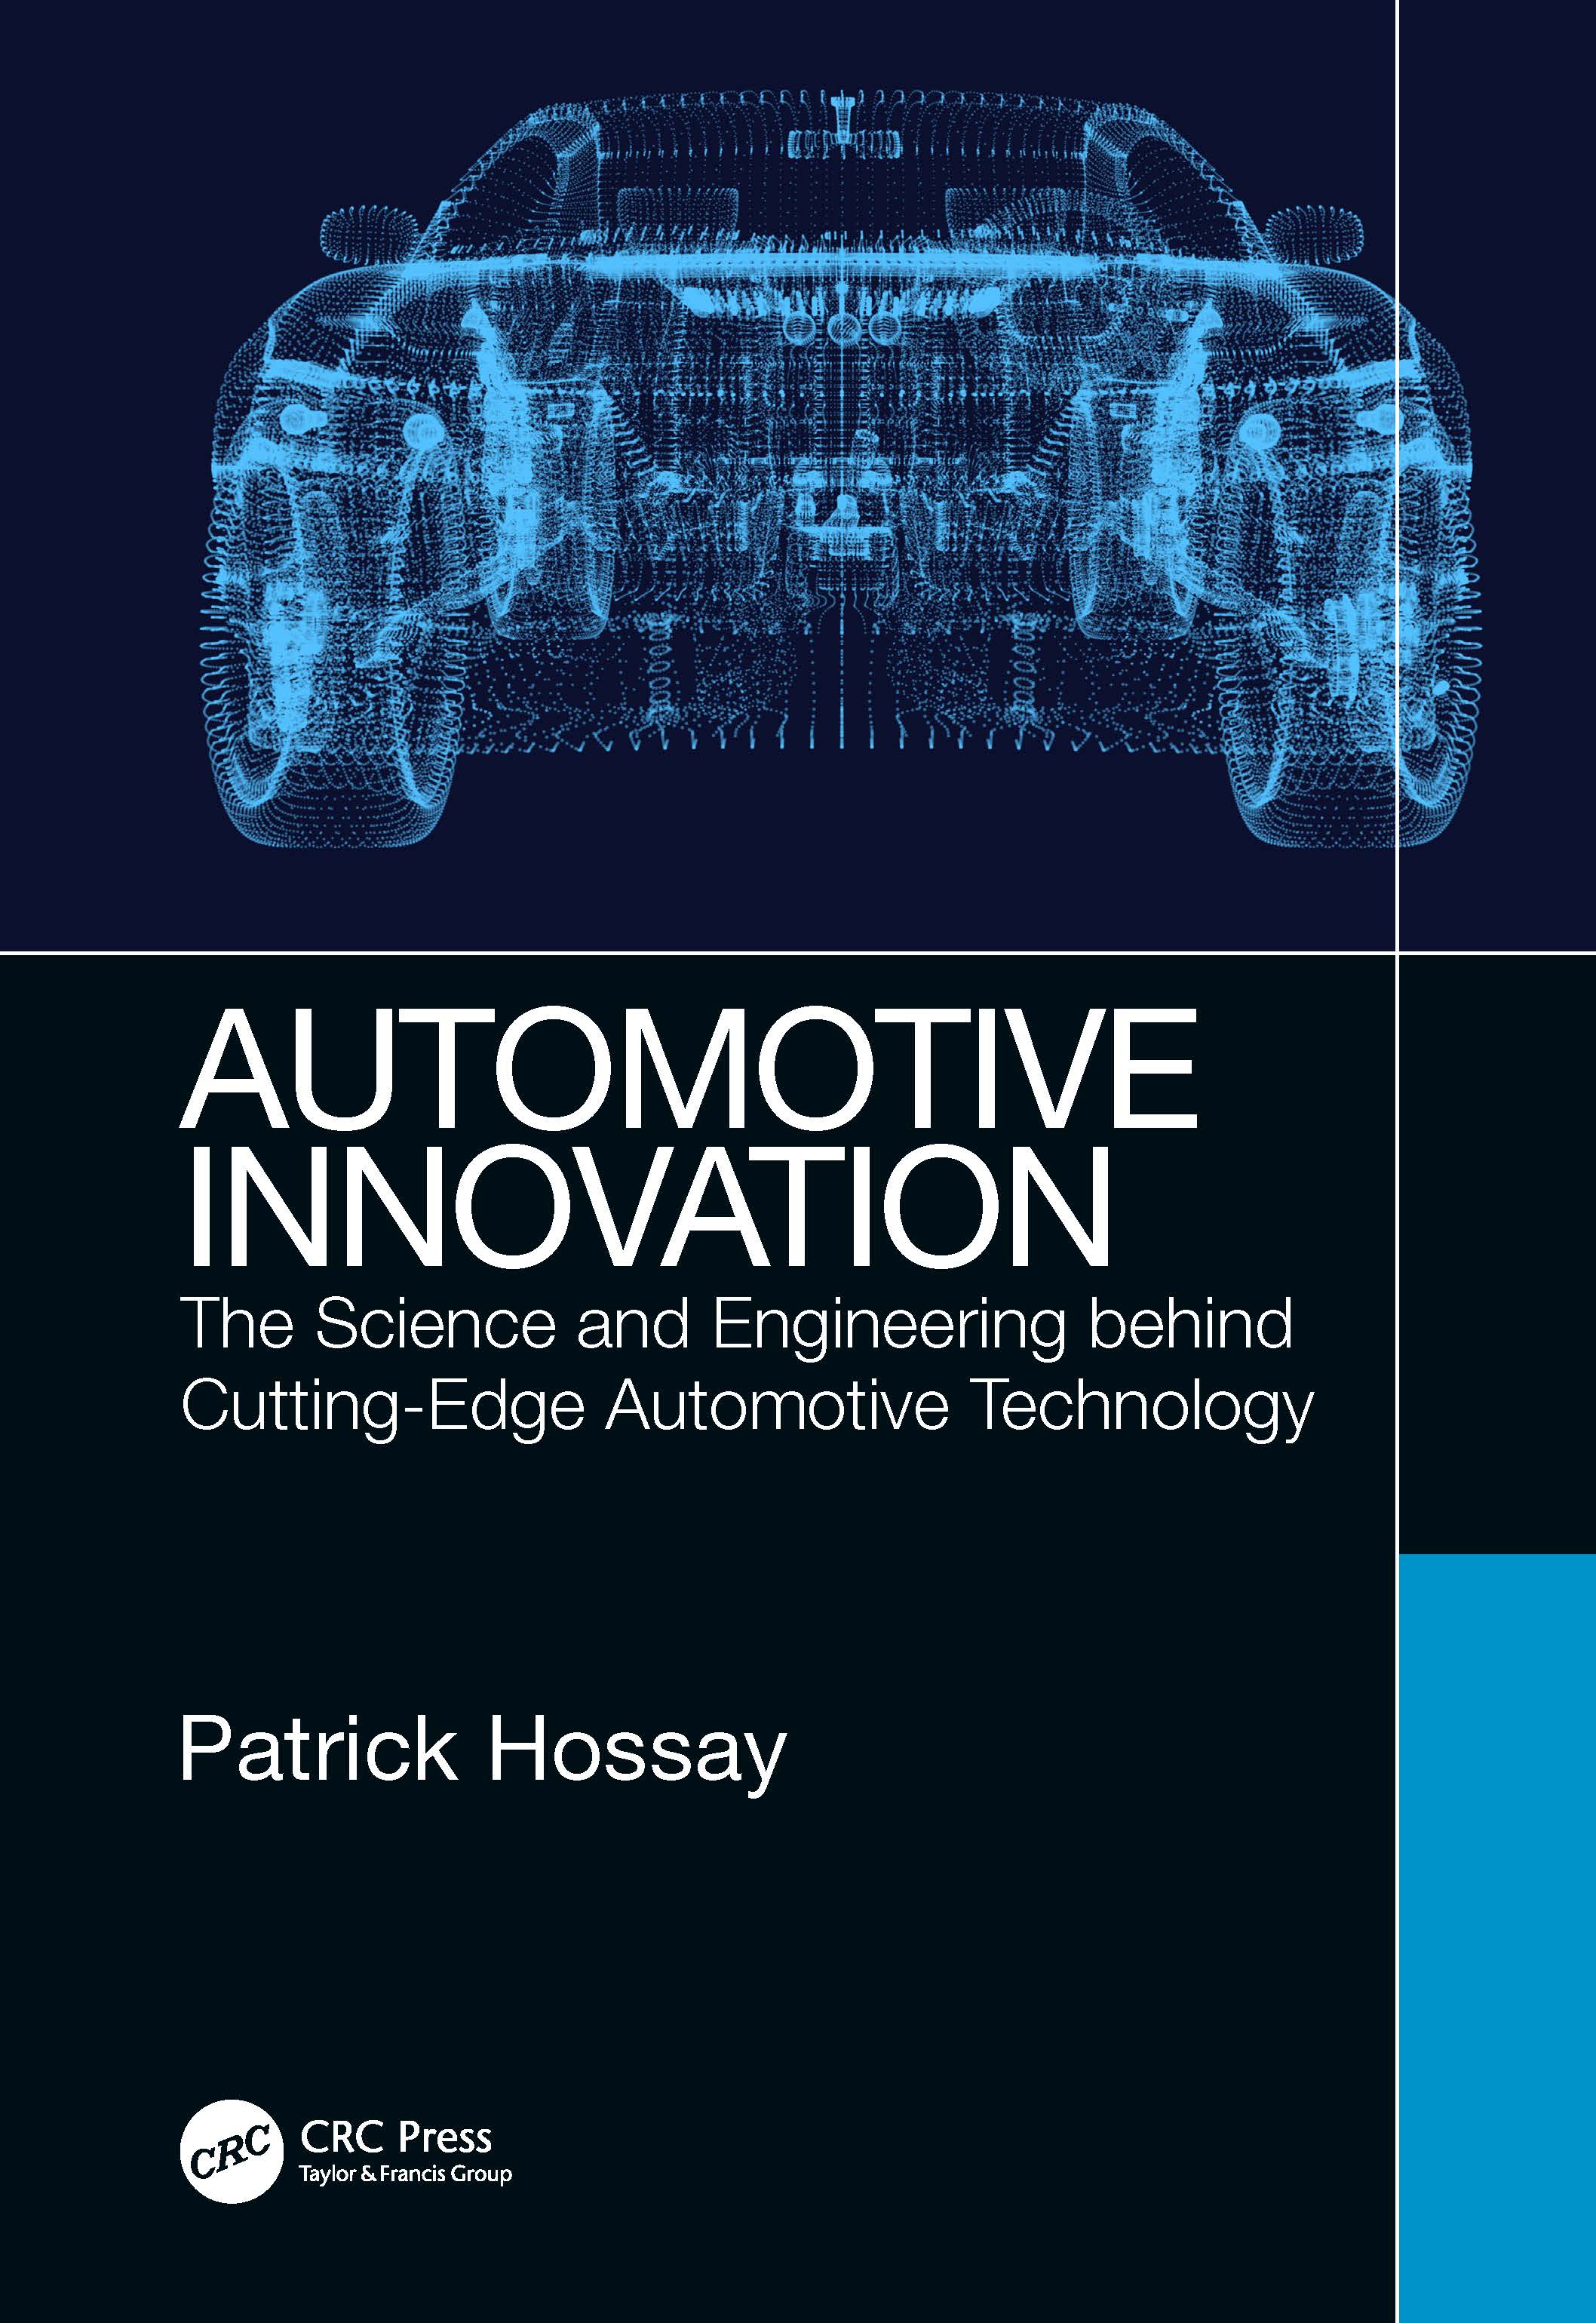 Automotive Innovation Group